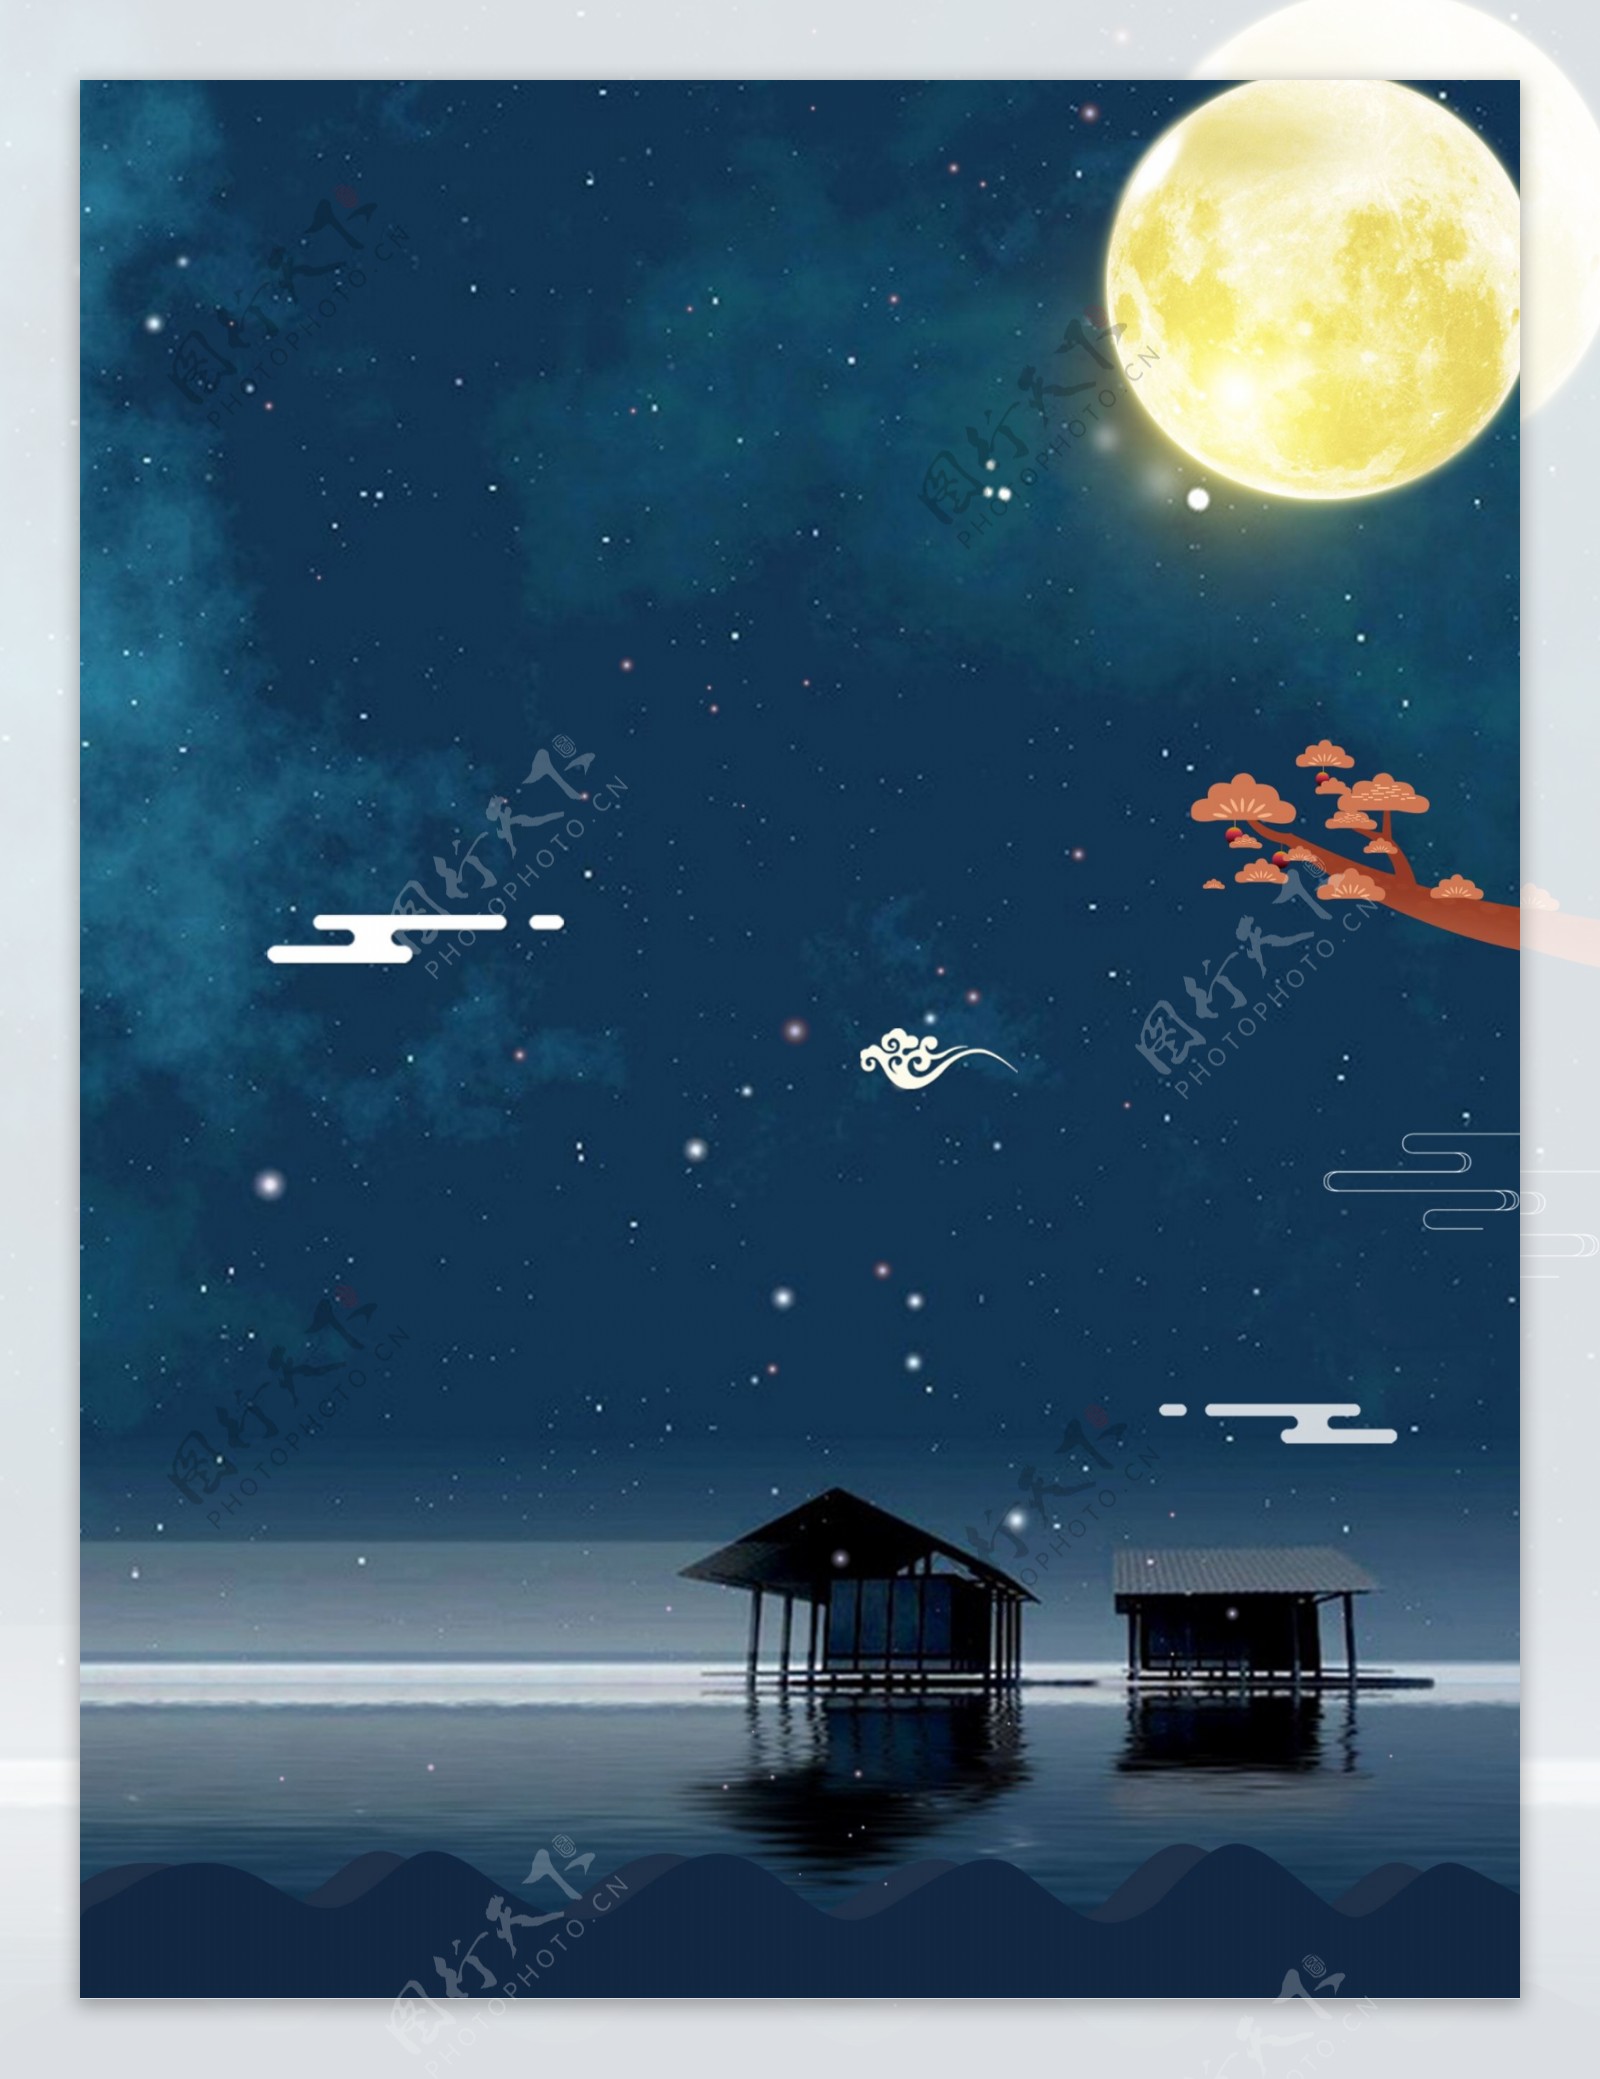 浪漫湖面木屋月光背景